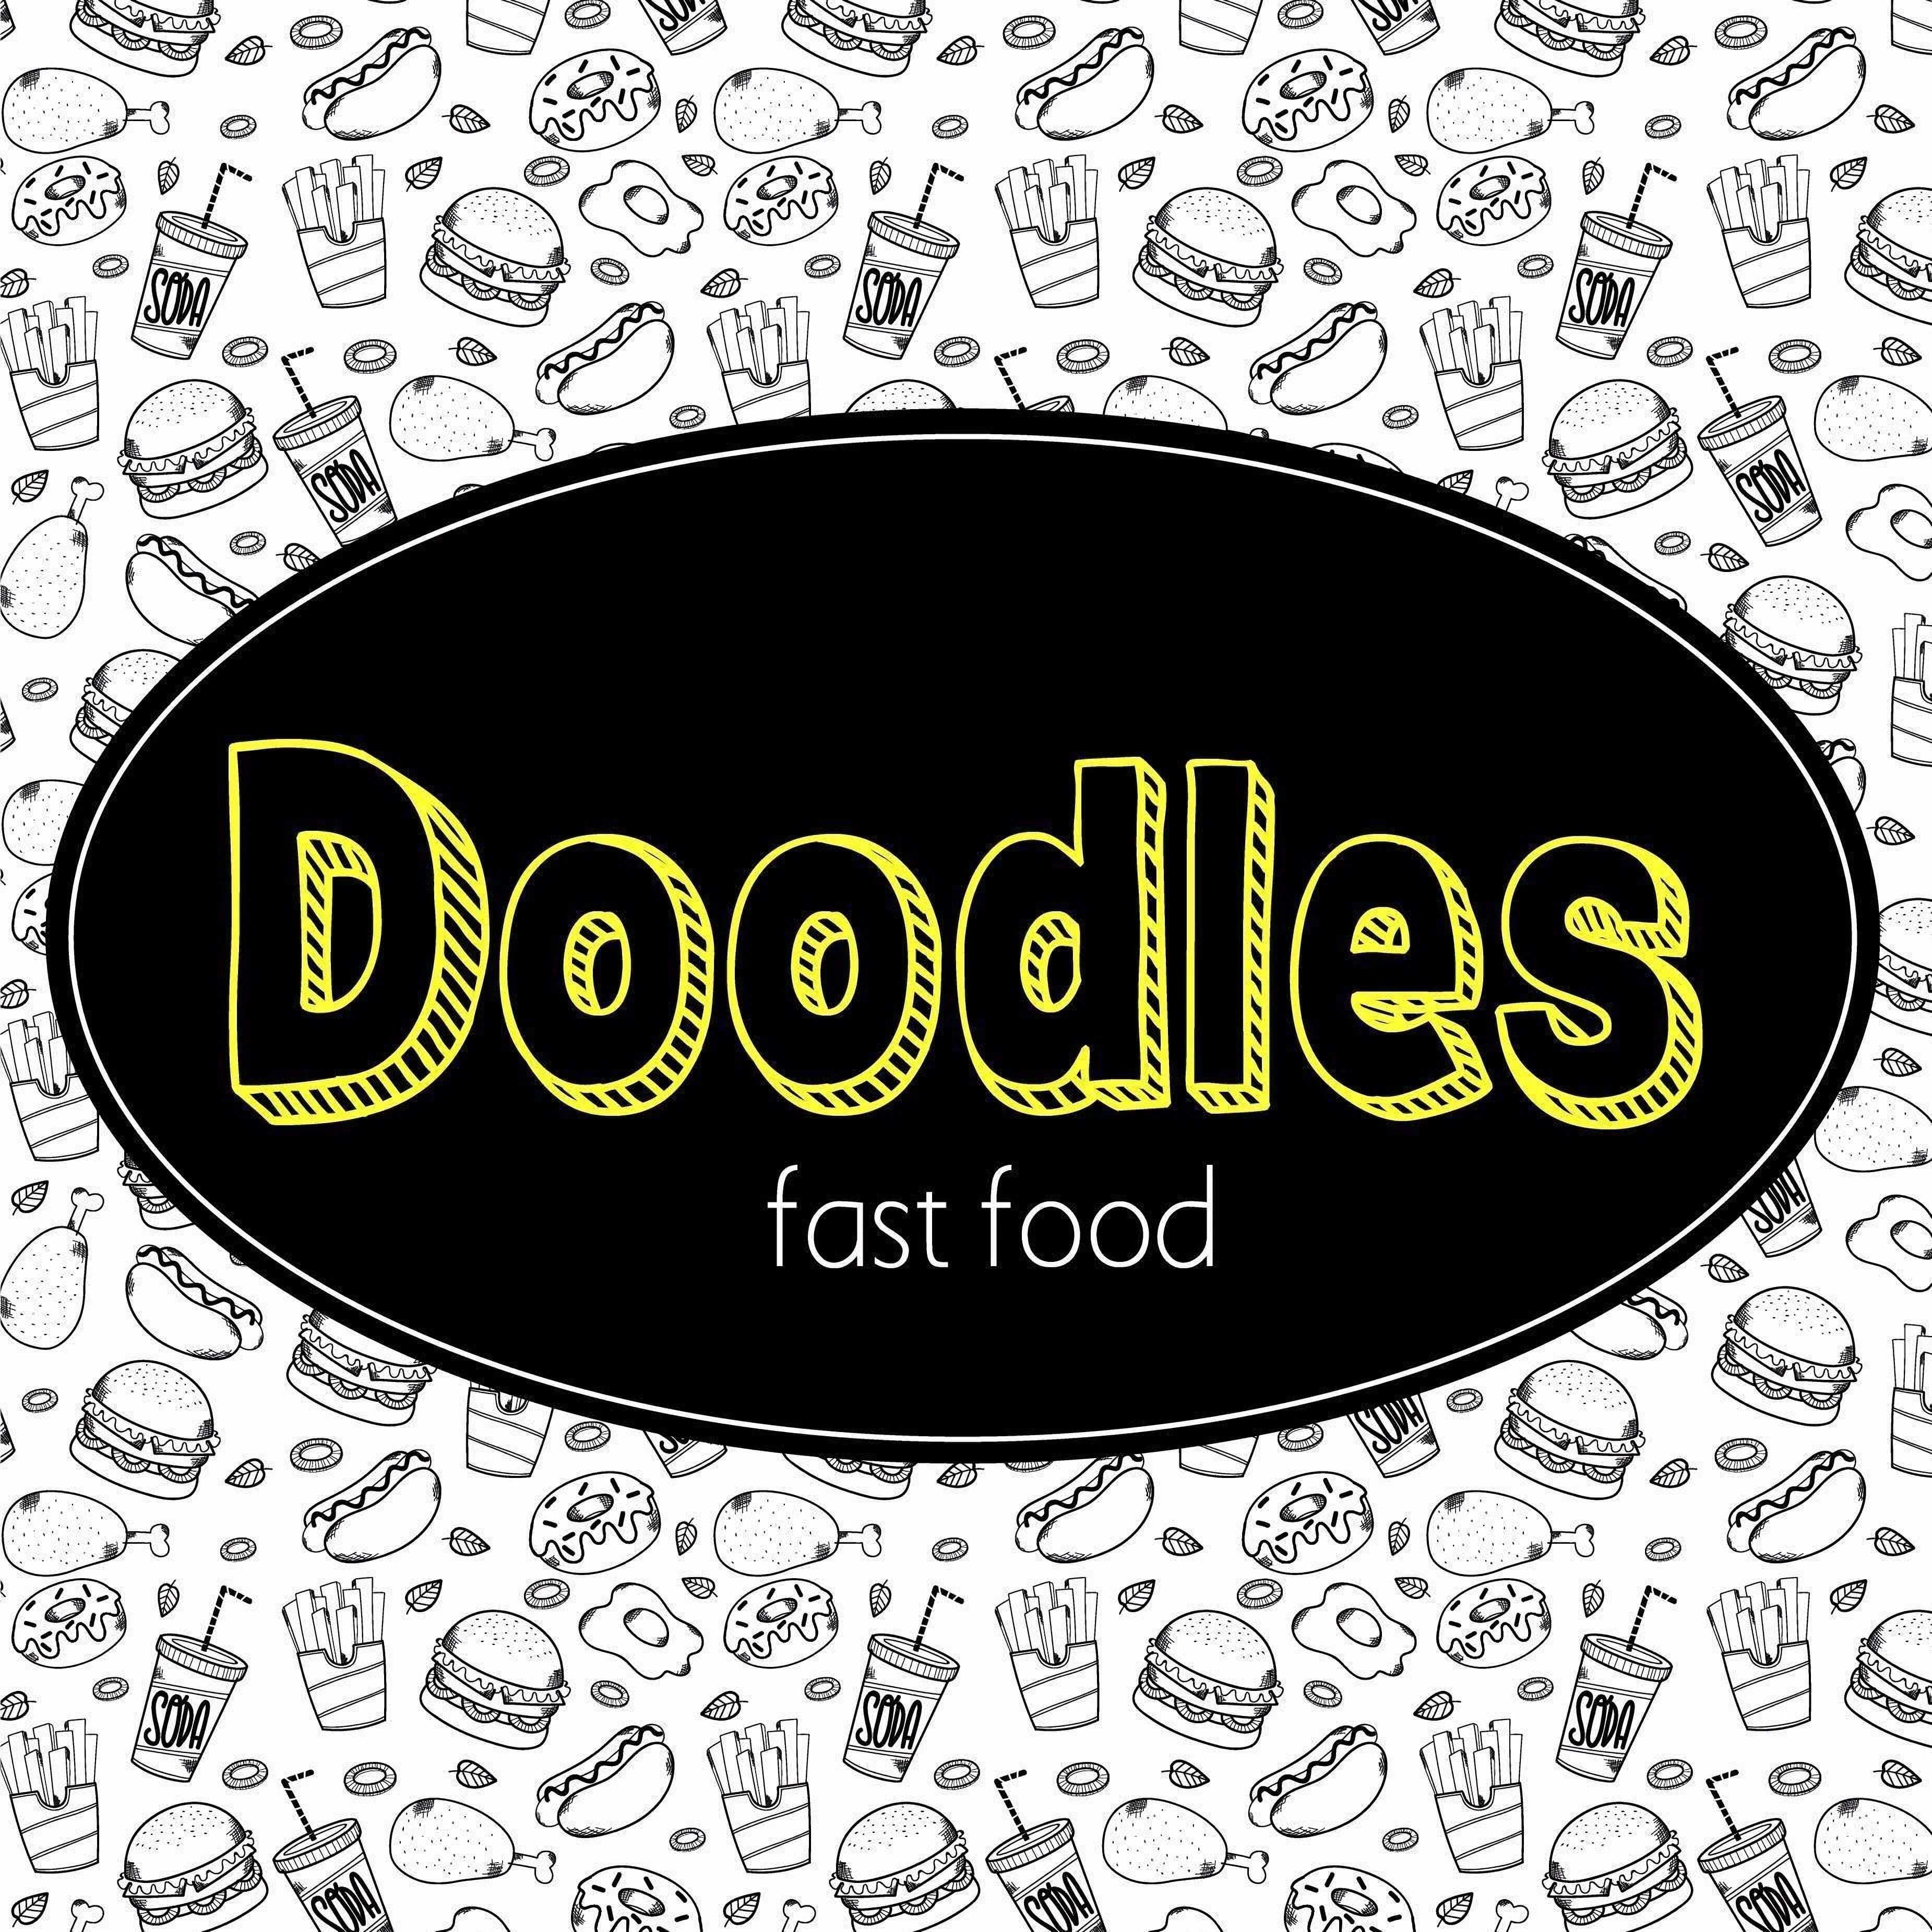 Doodles fast food-4972